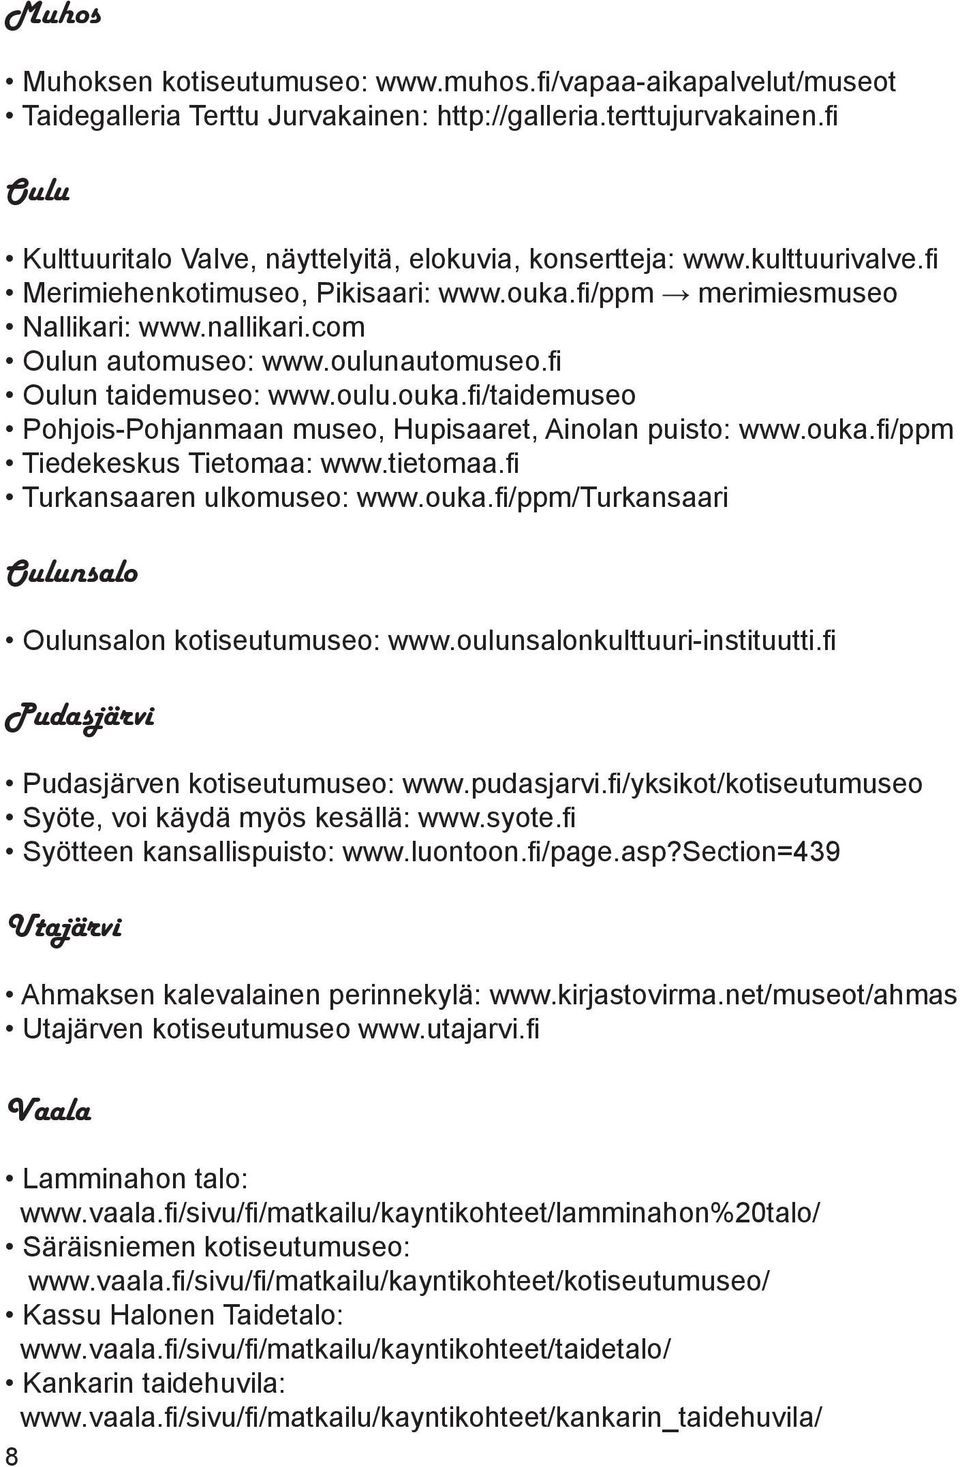 oulunautomuseo.fi Oulun taidemuseo: www.oulu.ouka.fi/taidemuseo Pohjois-Pohjanmaan museo, Hupisaaret, Ainolan puisto: www.ouka.fi/ppm Tiedekeskus Tietomaa: www.tietomaa.fi Turkansaaren ulkomuseo: www.